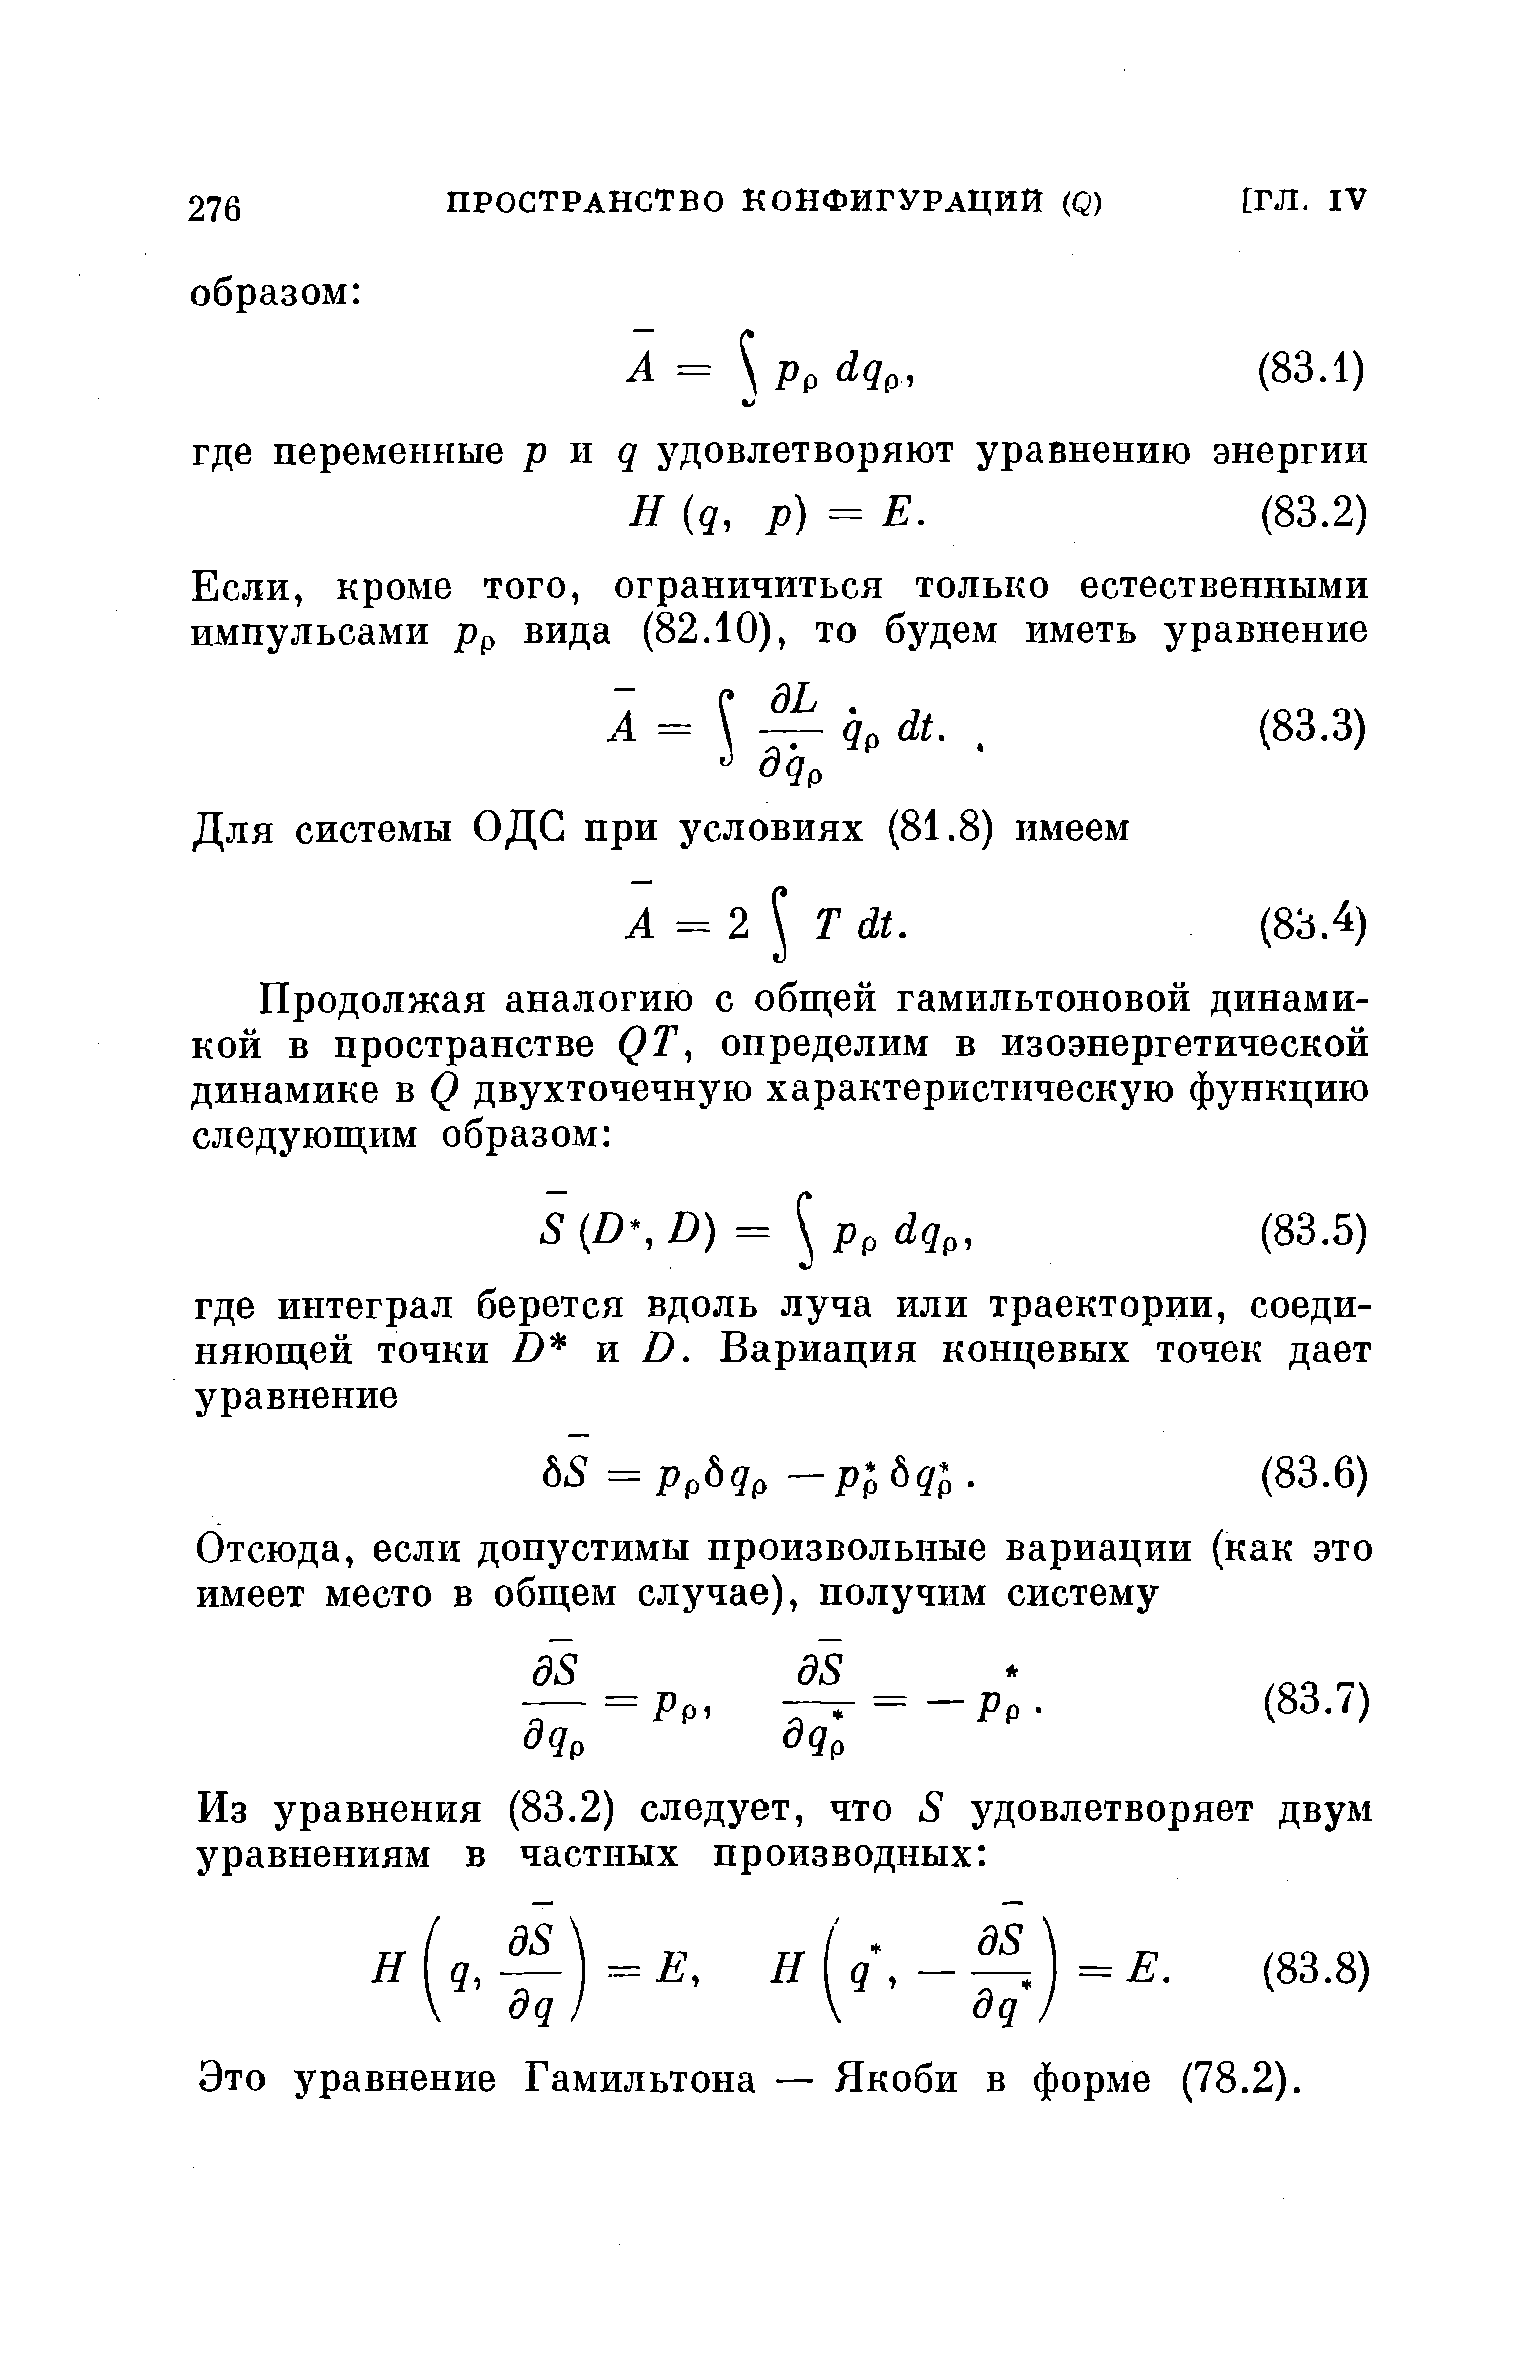 Это уравнение Гамильтона — Якоби в форме (78.2).
